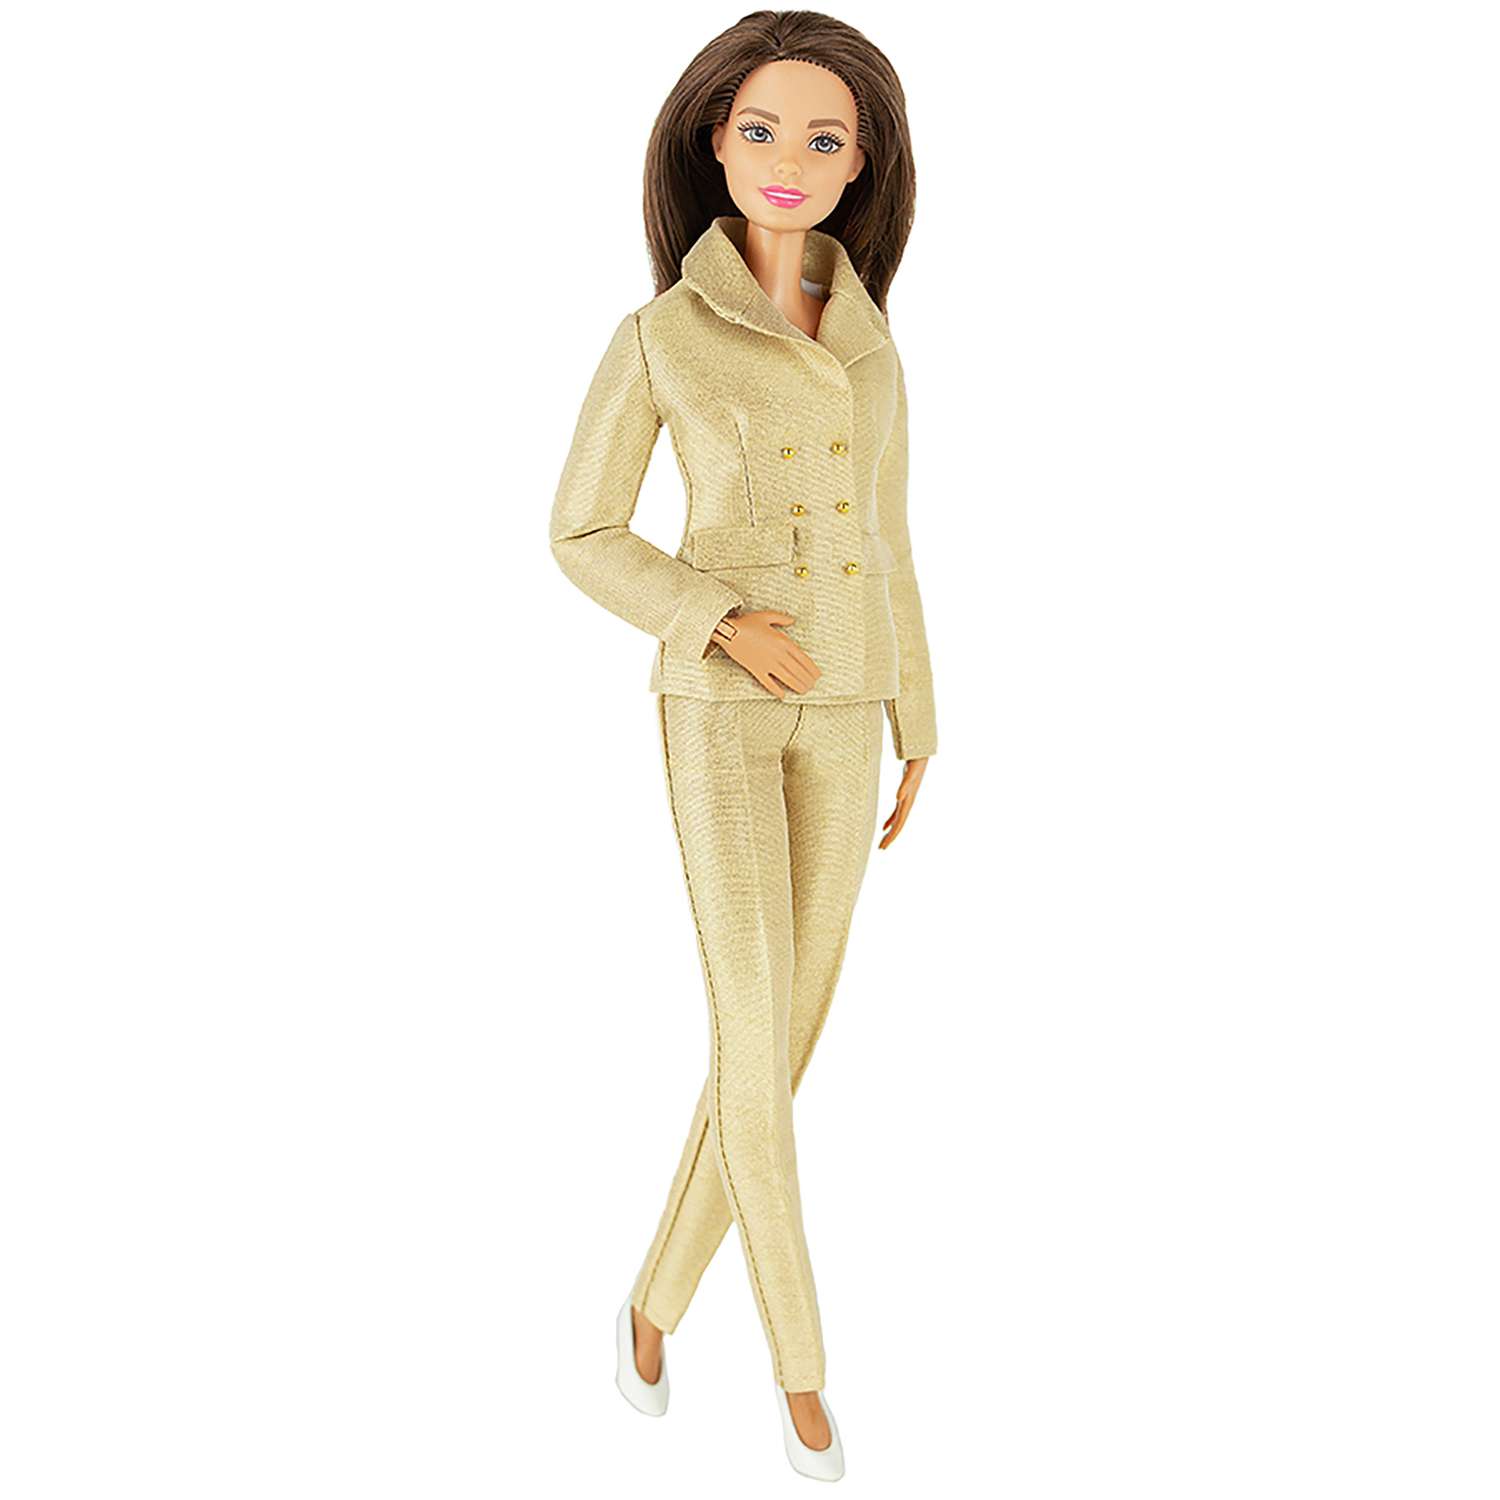 Шелковый брючный костюм Эленприв Золотой для куклы 29 см типа Барби FA-011-12 - фото 1